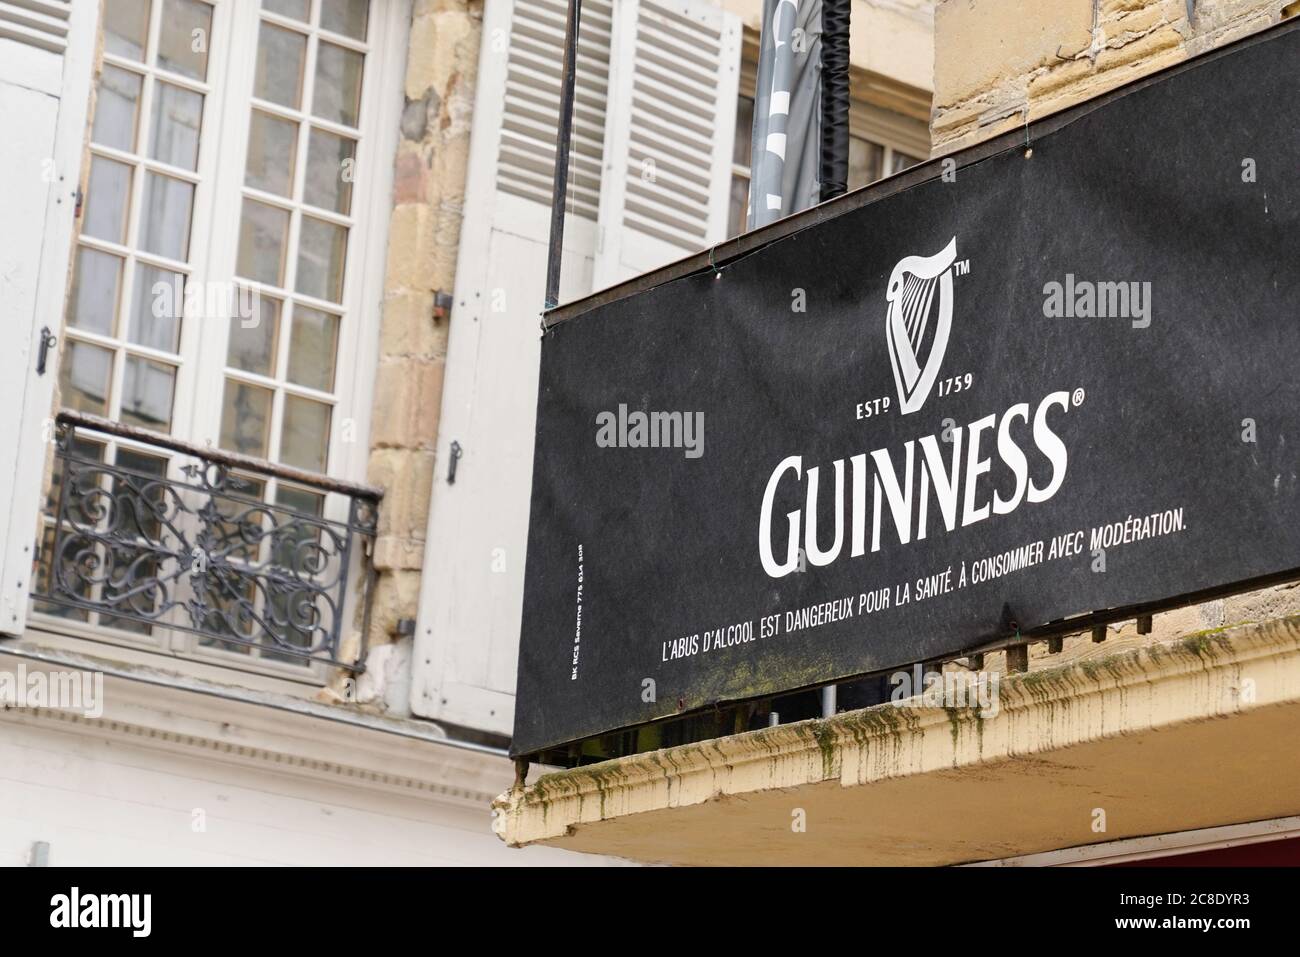 Bordeaux , Aquitaine / France - 07 21 2020 : logo guinness et panneau de texte à l'extérieur du pub local, bar restaurant Banque D'Images